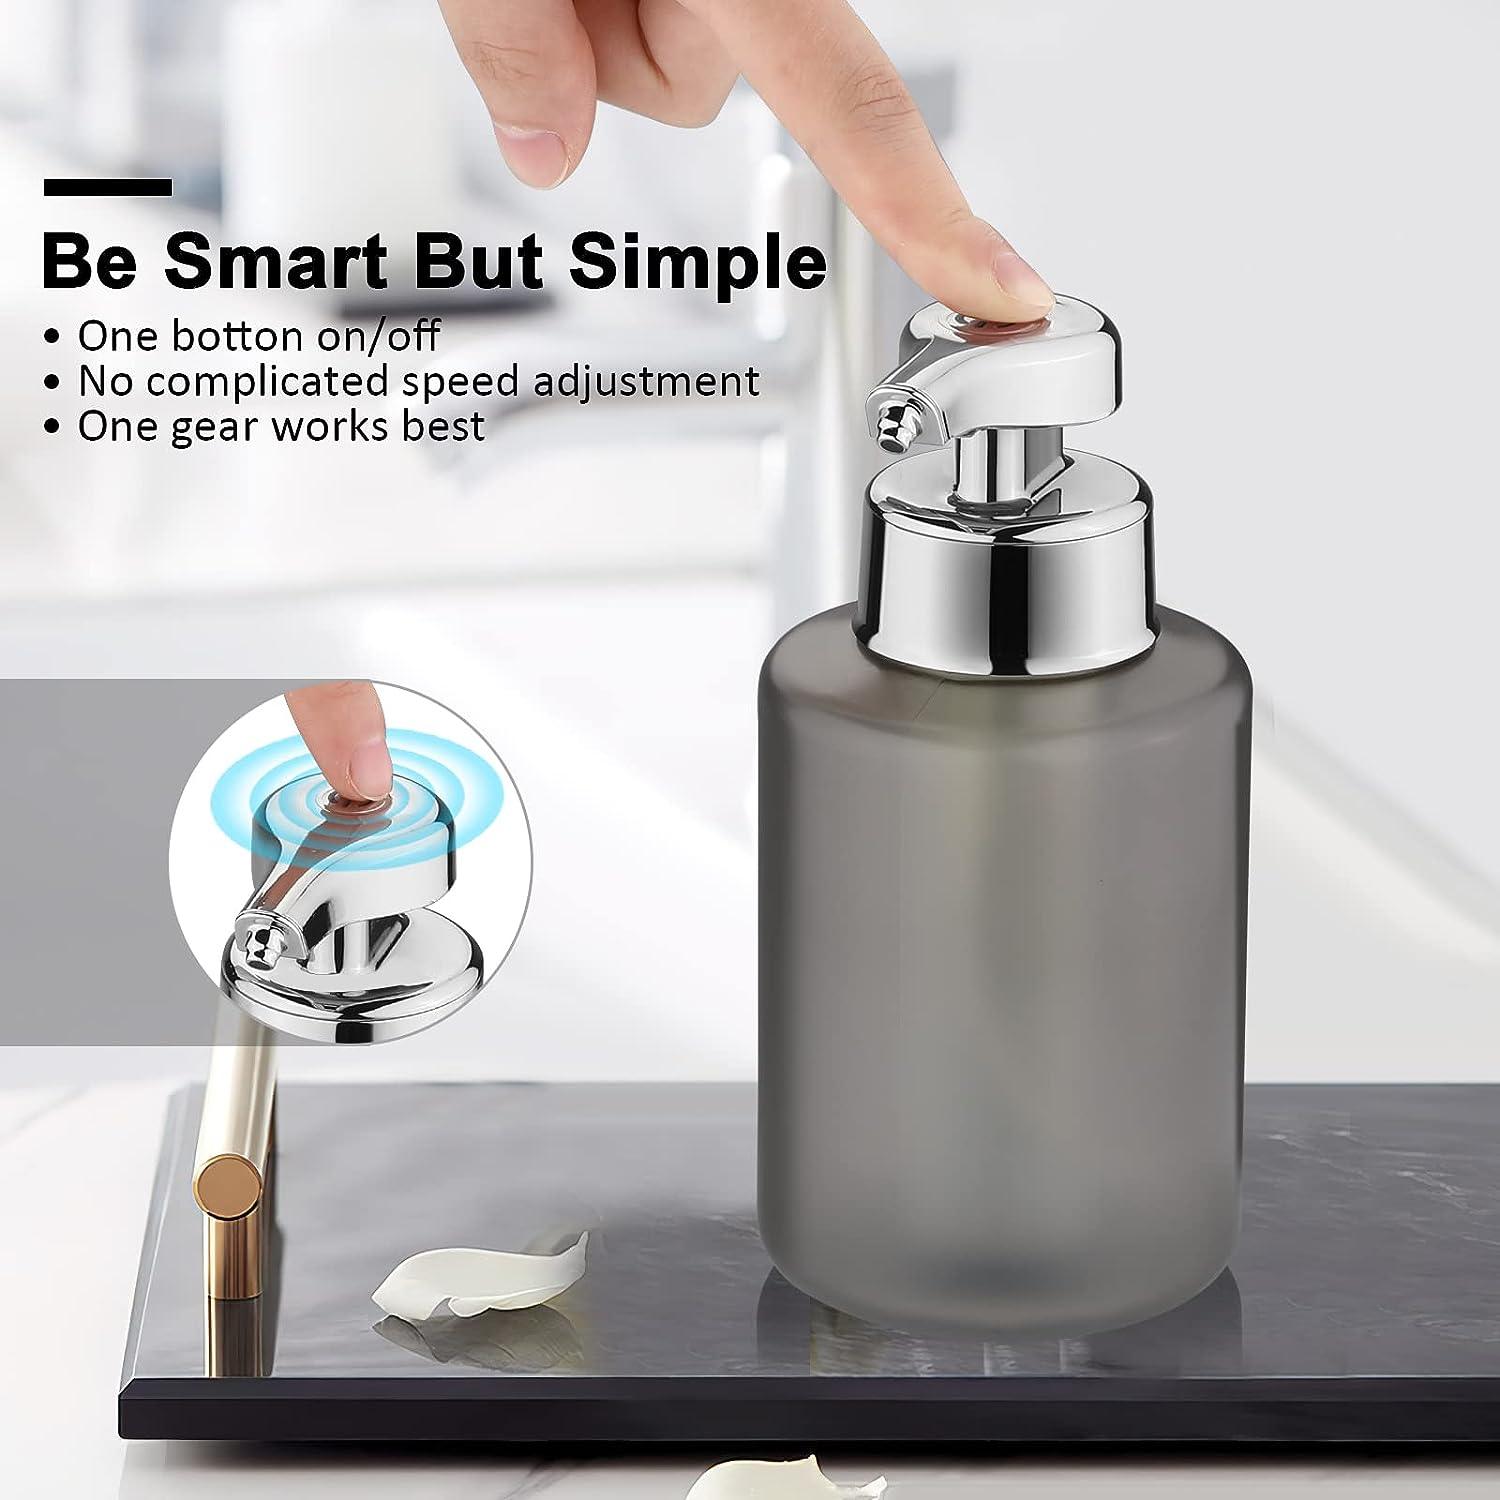 Dispensadores de jabón para usuarios con poca fuerza en las manos